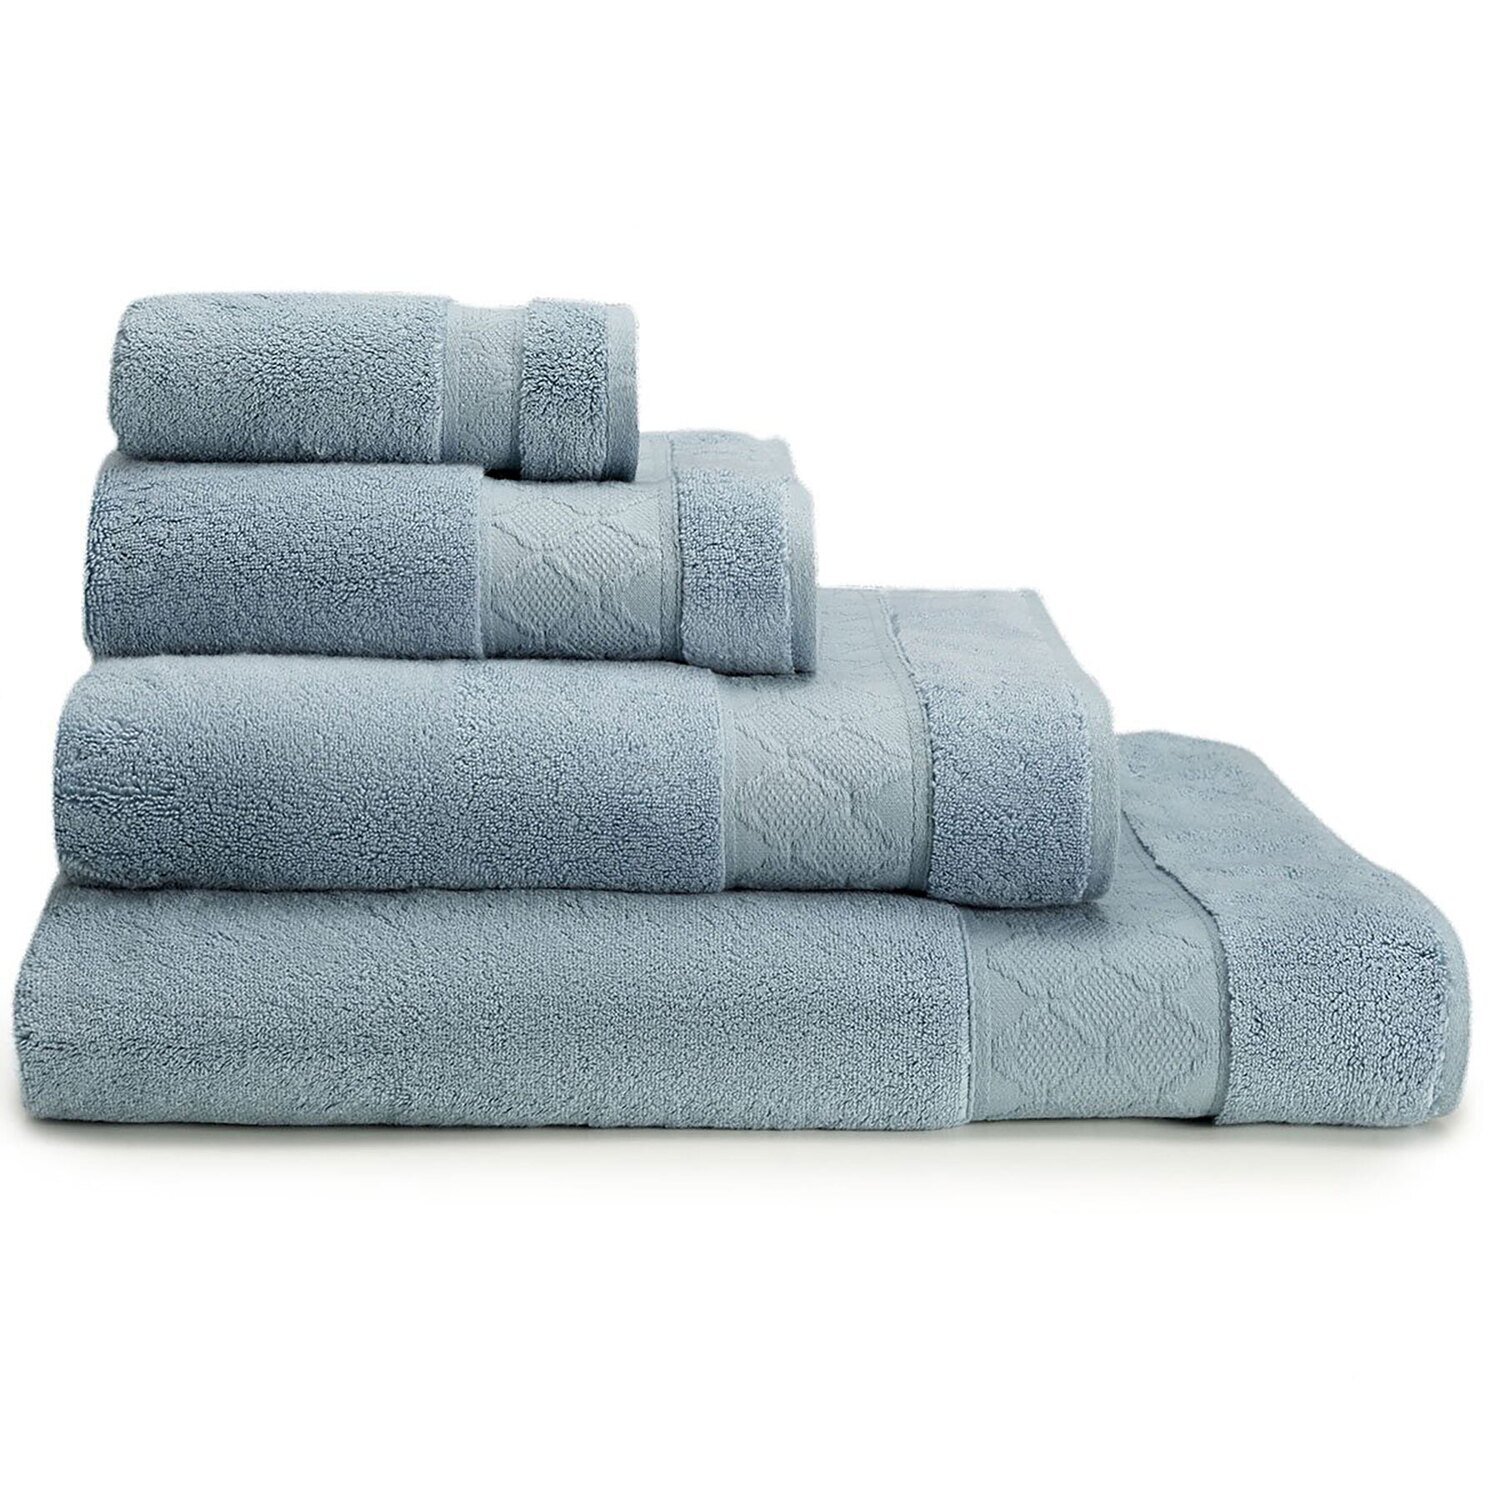 Le Jacquard Francais Guest Towel Caresse Blue Ice 100% Cotton 26890 Set of 4